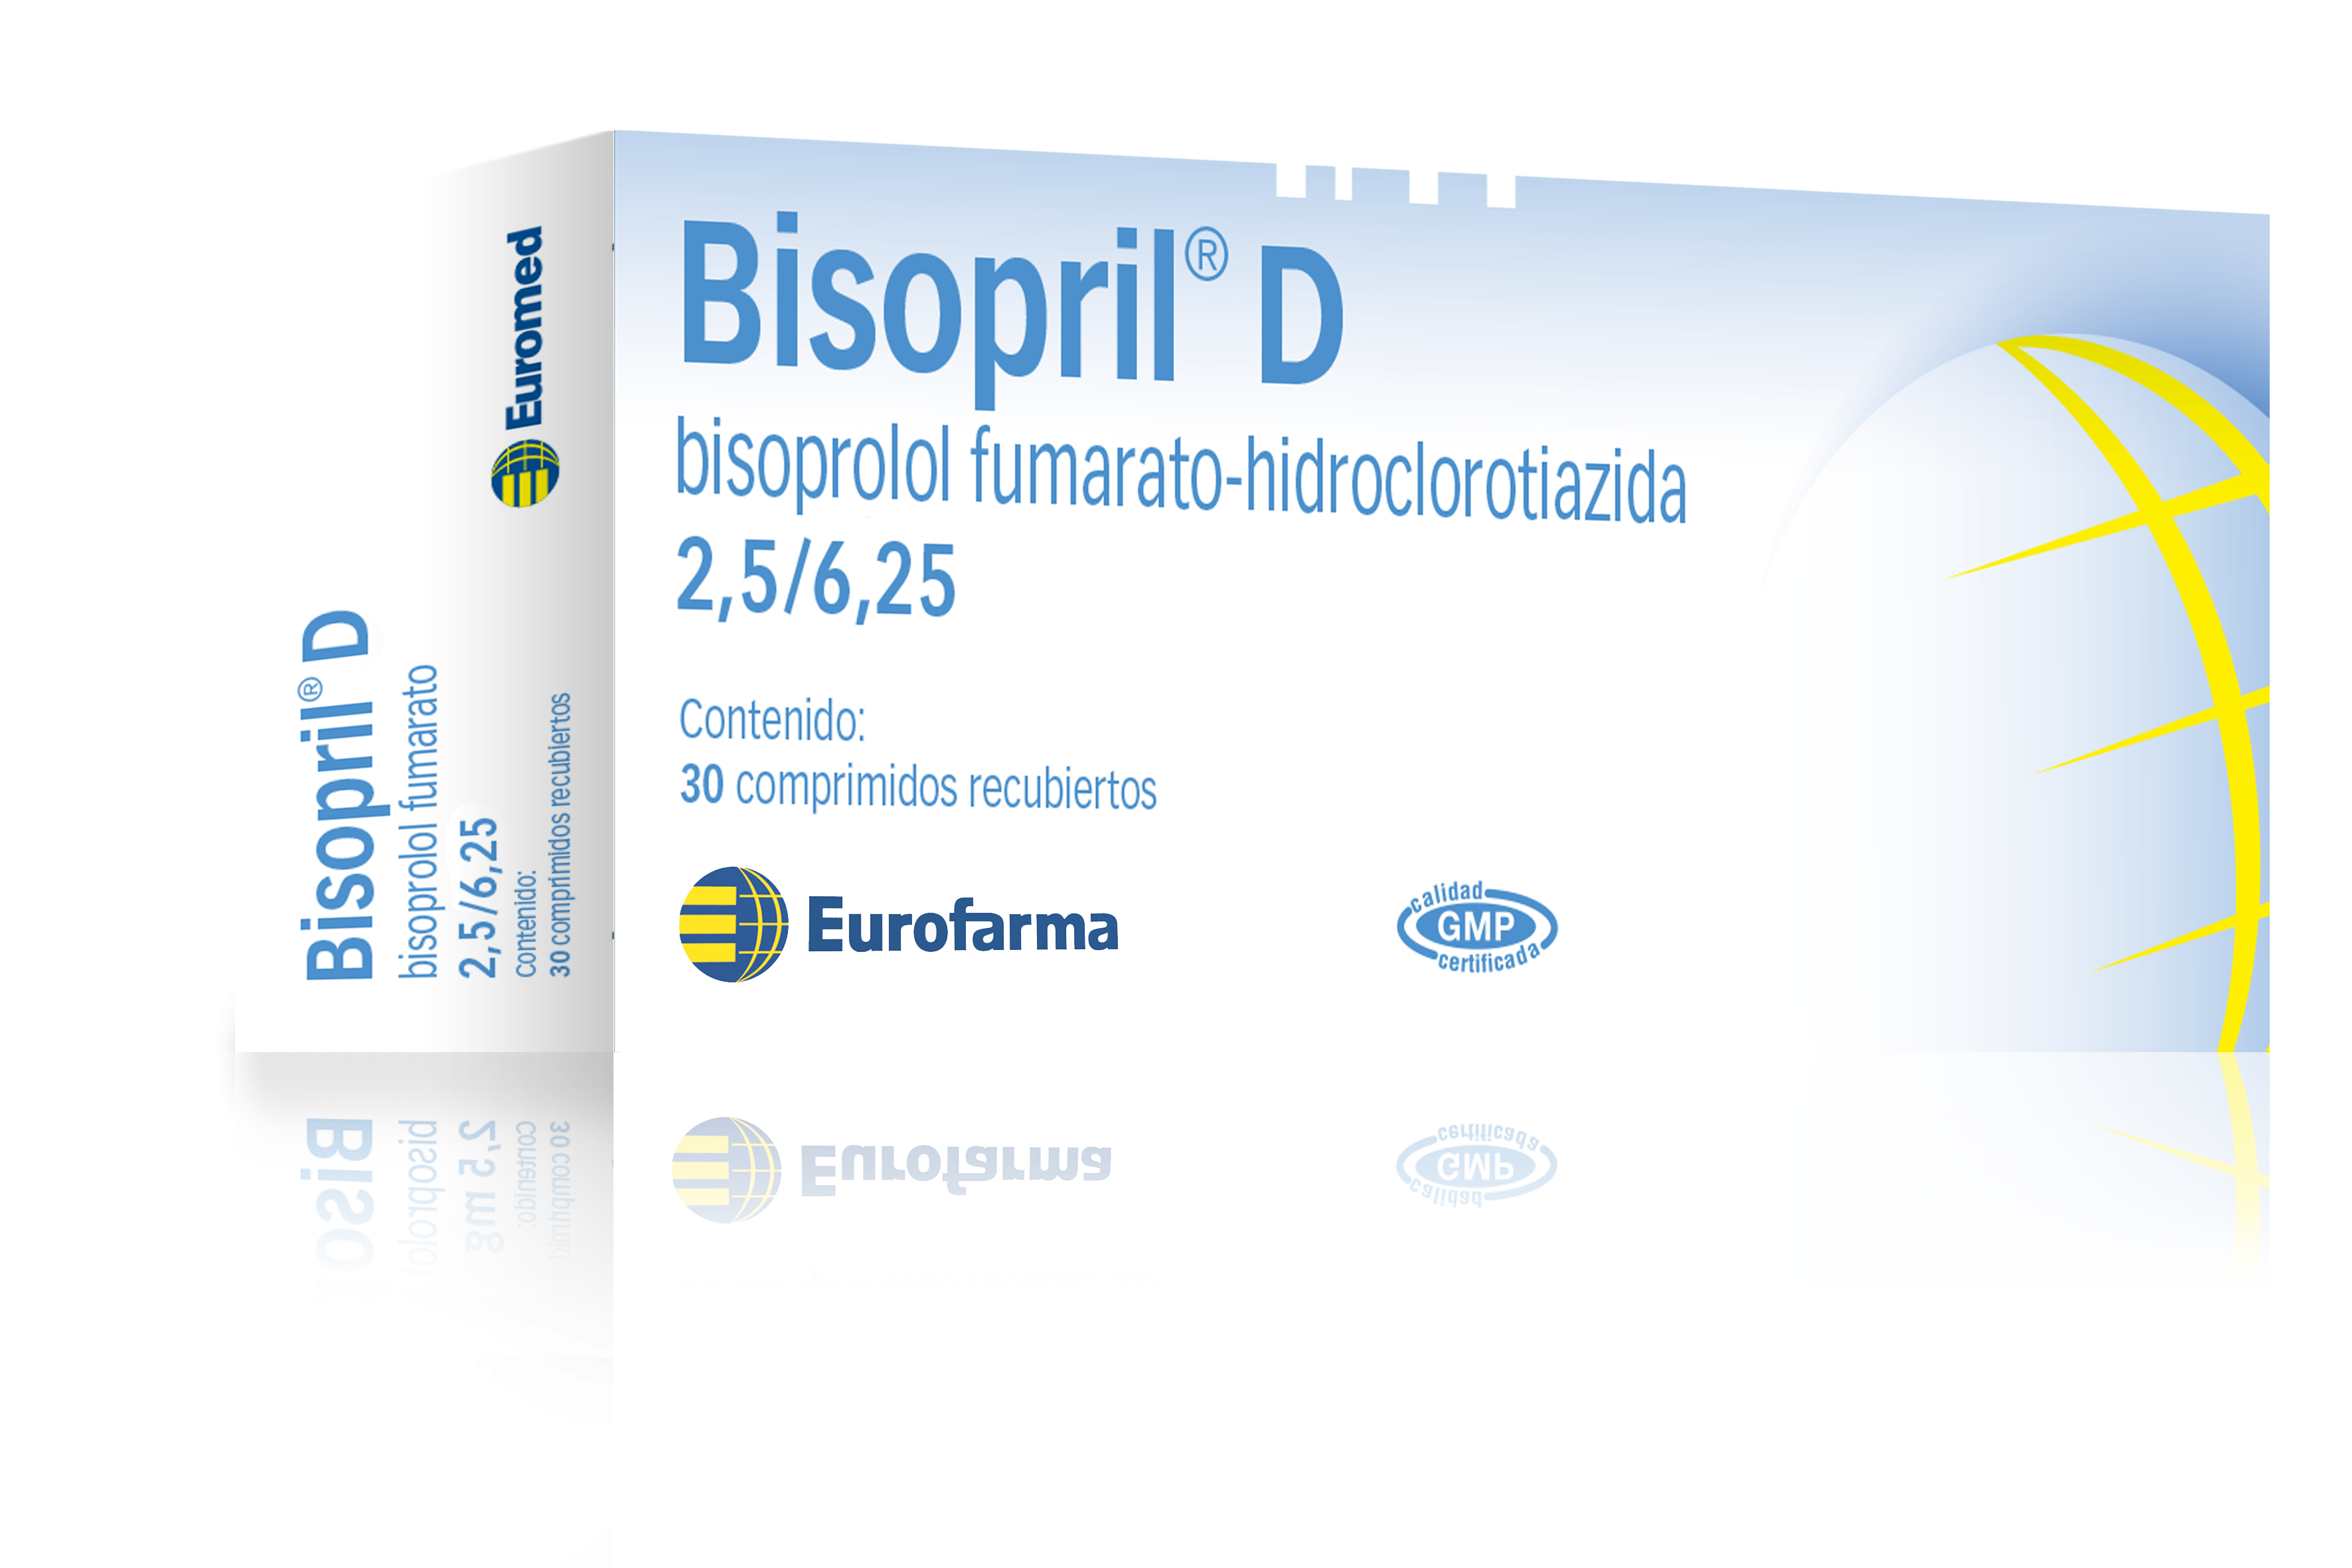 Bisopril D 2,5 mg. / 6,25 mg. (Bisoprolol Fumarato + Hidroclorotiazida)